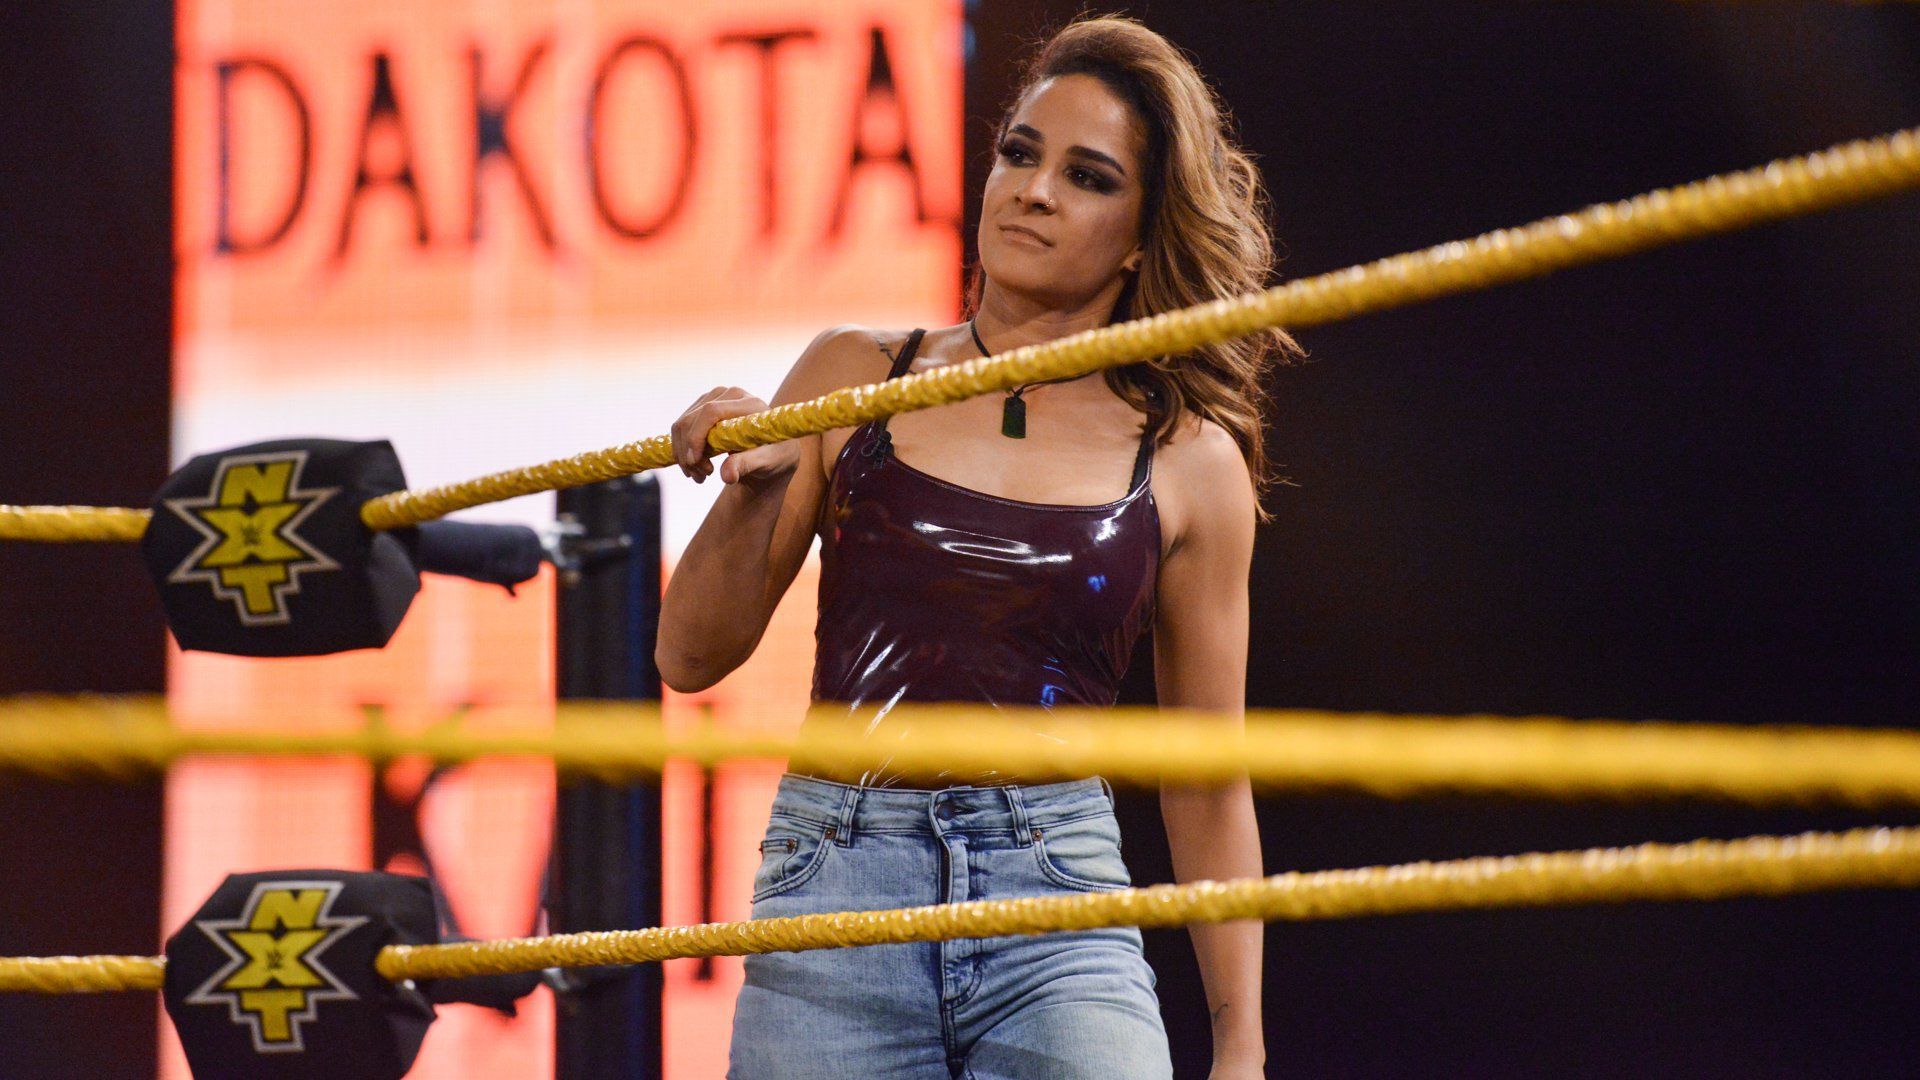 Dakota Kai won NXT Future Star of the Year. Female